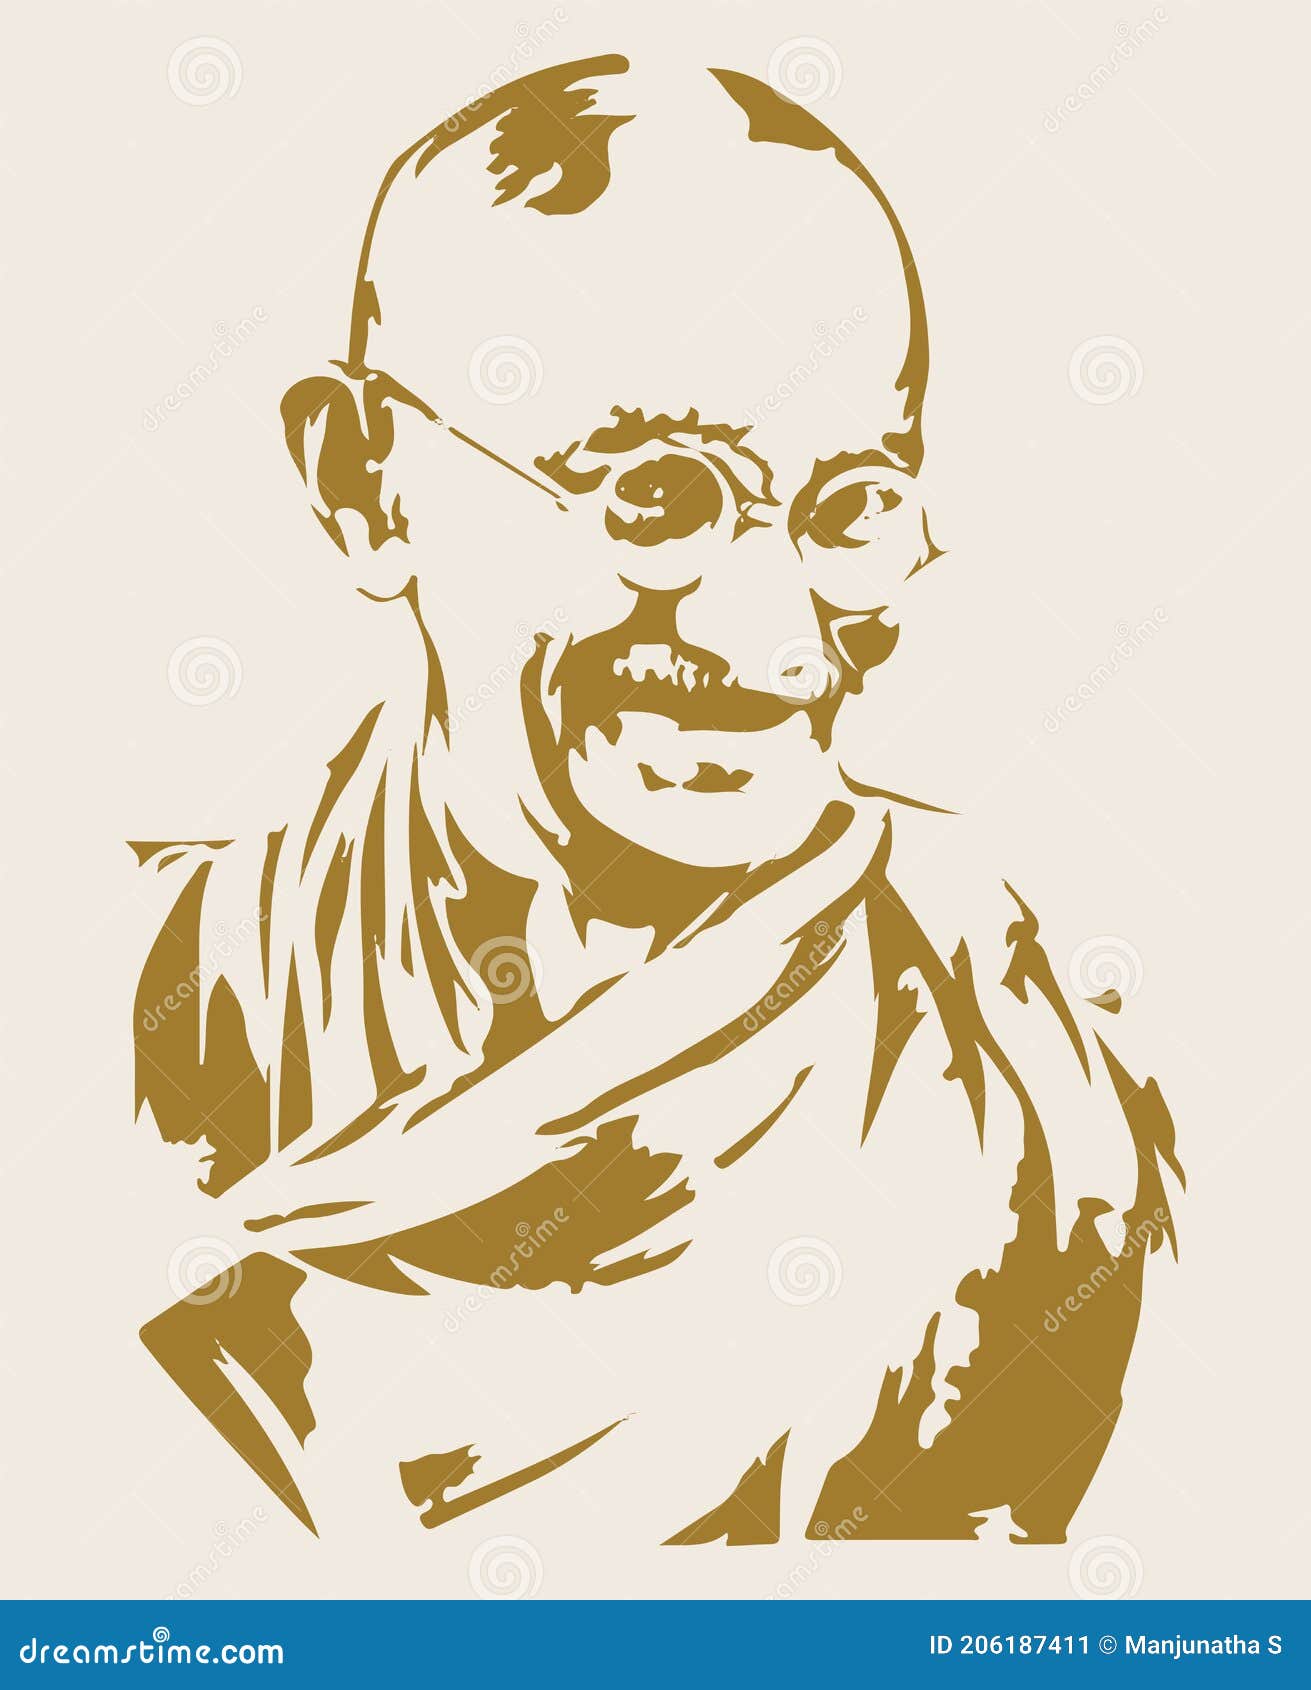 Most Easy Gandhiji Drawing for number 2023 | आसानी से गांधी जी का ये चित्र  बनाये गाँधी जन्म दिवस पर - YouTube